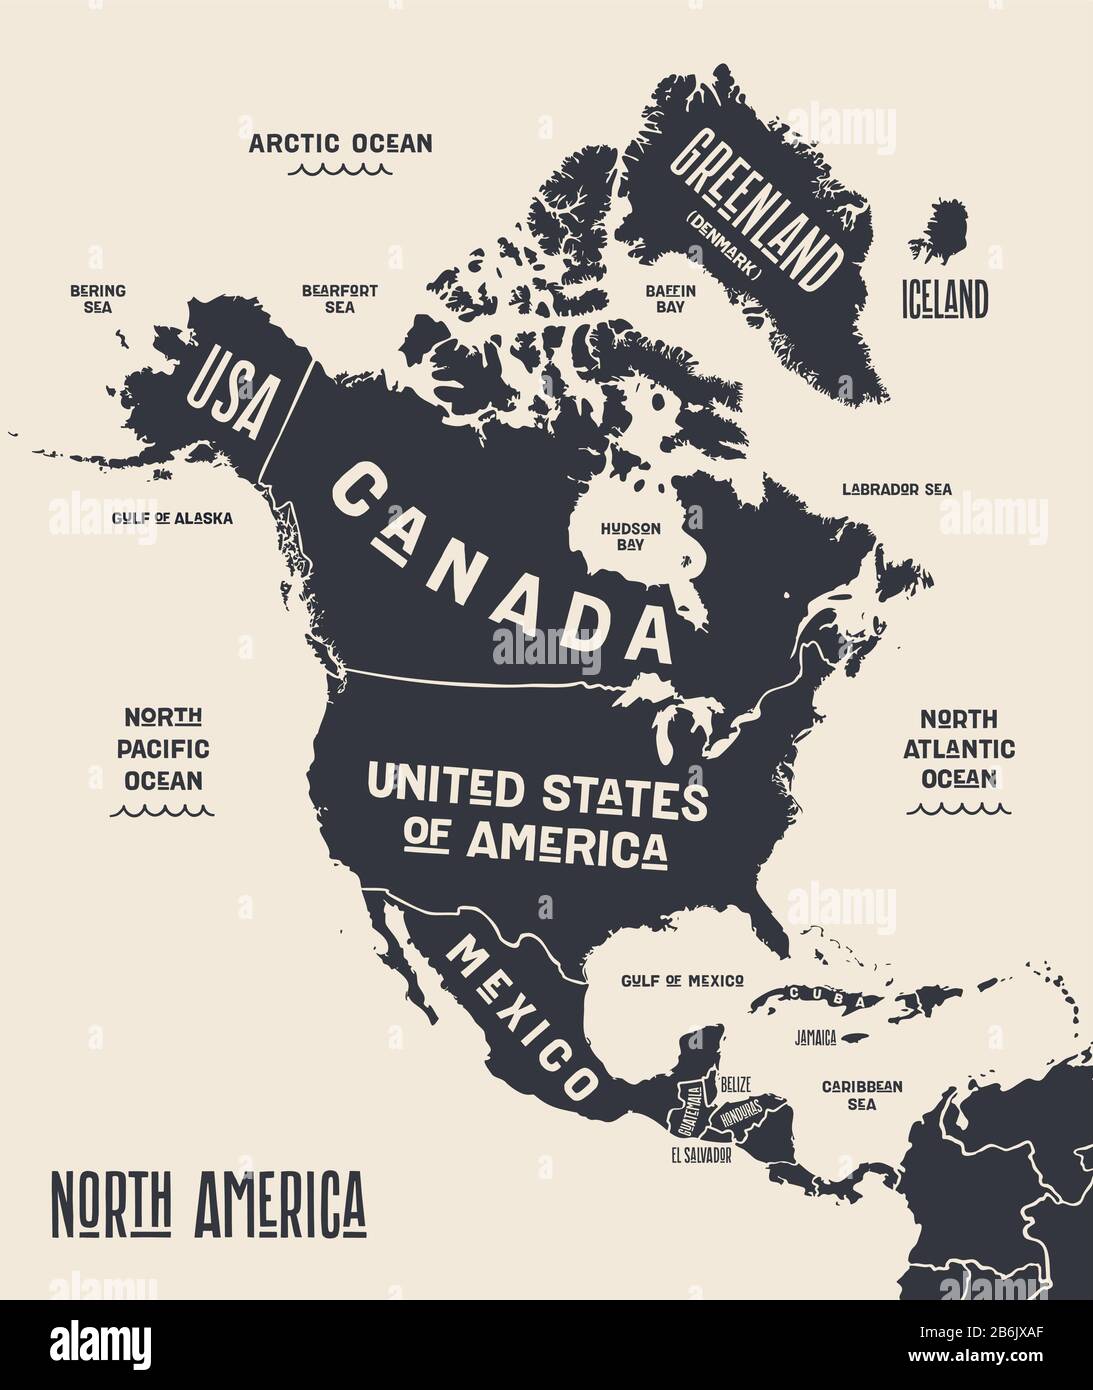 Mapa De América Del Norte Mapa Póster De Norteamérica Mapa Impreso En Blanco Y Negro De 5934